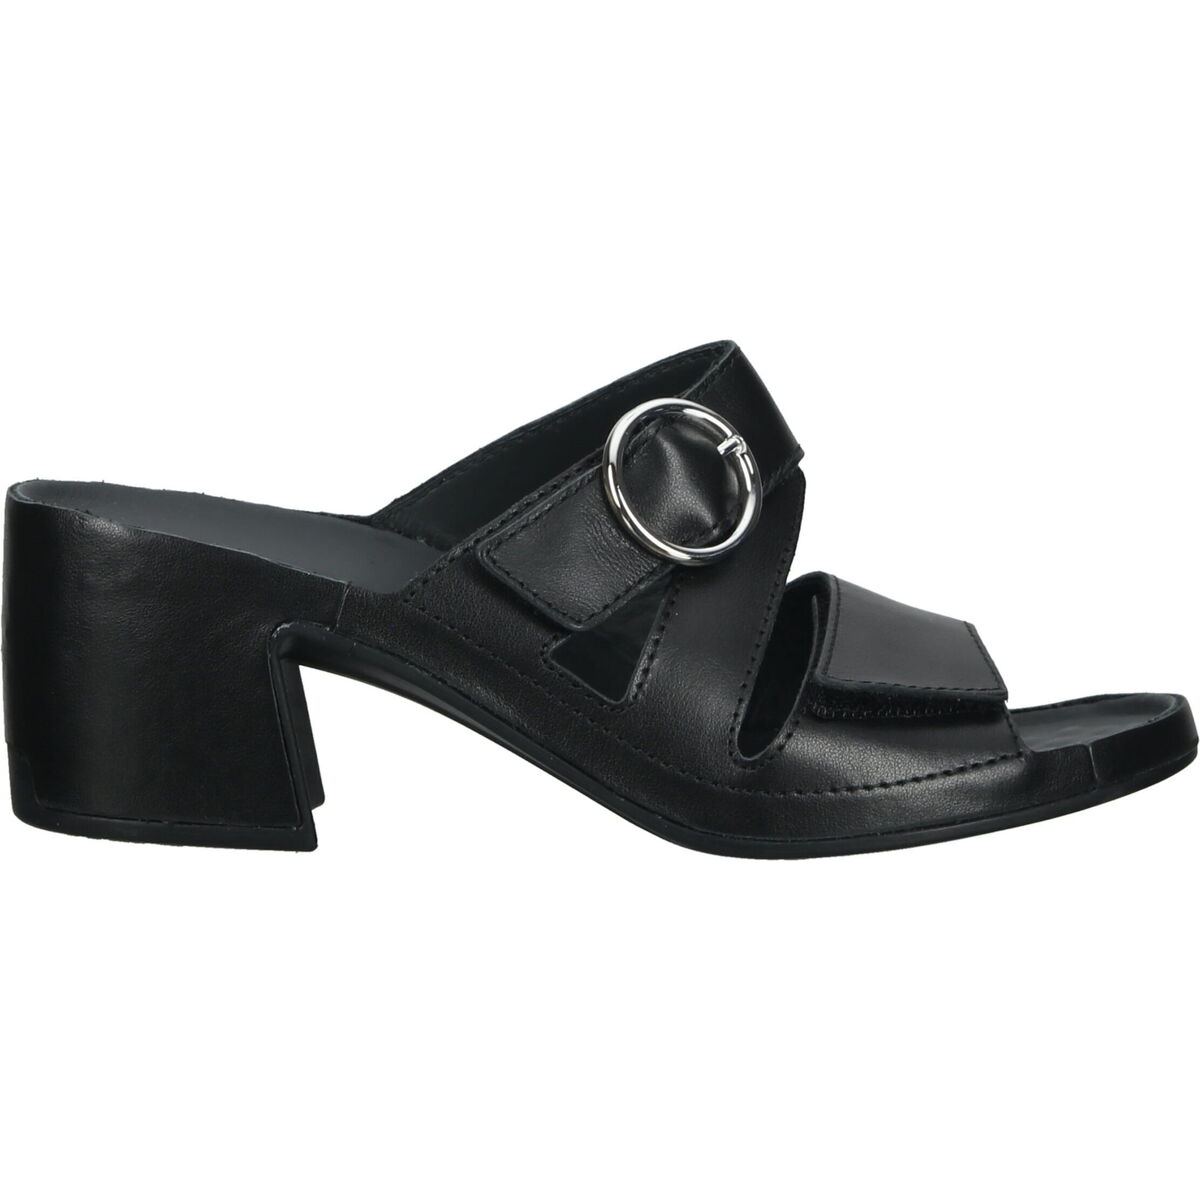 Chaussures Femme Sabots Vital Mules Noir